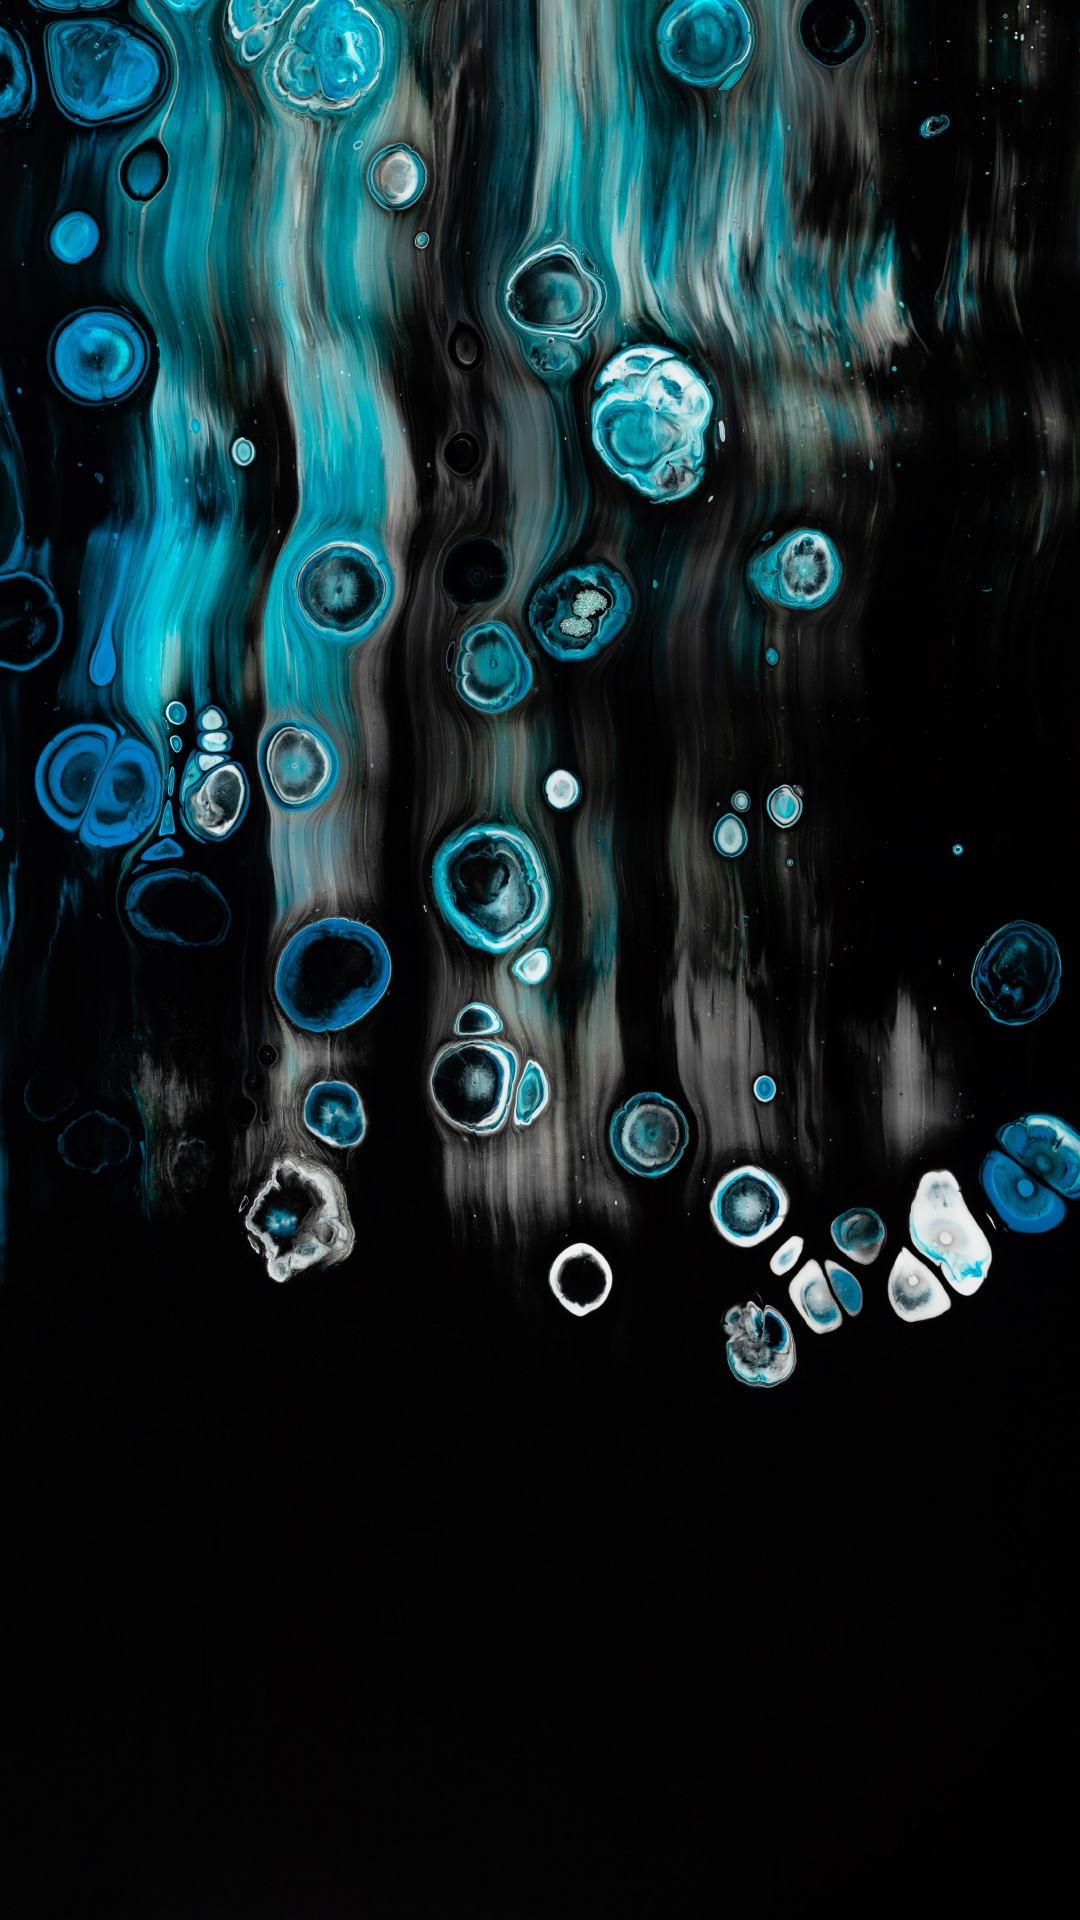 Papel Tapiz Digital de Luz Azul y Blanca. Wallpaper in 1080x1920 Resolution